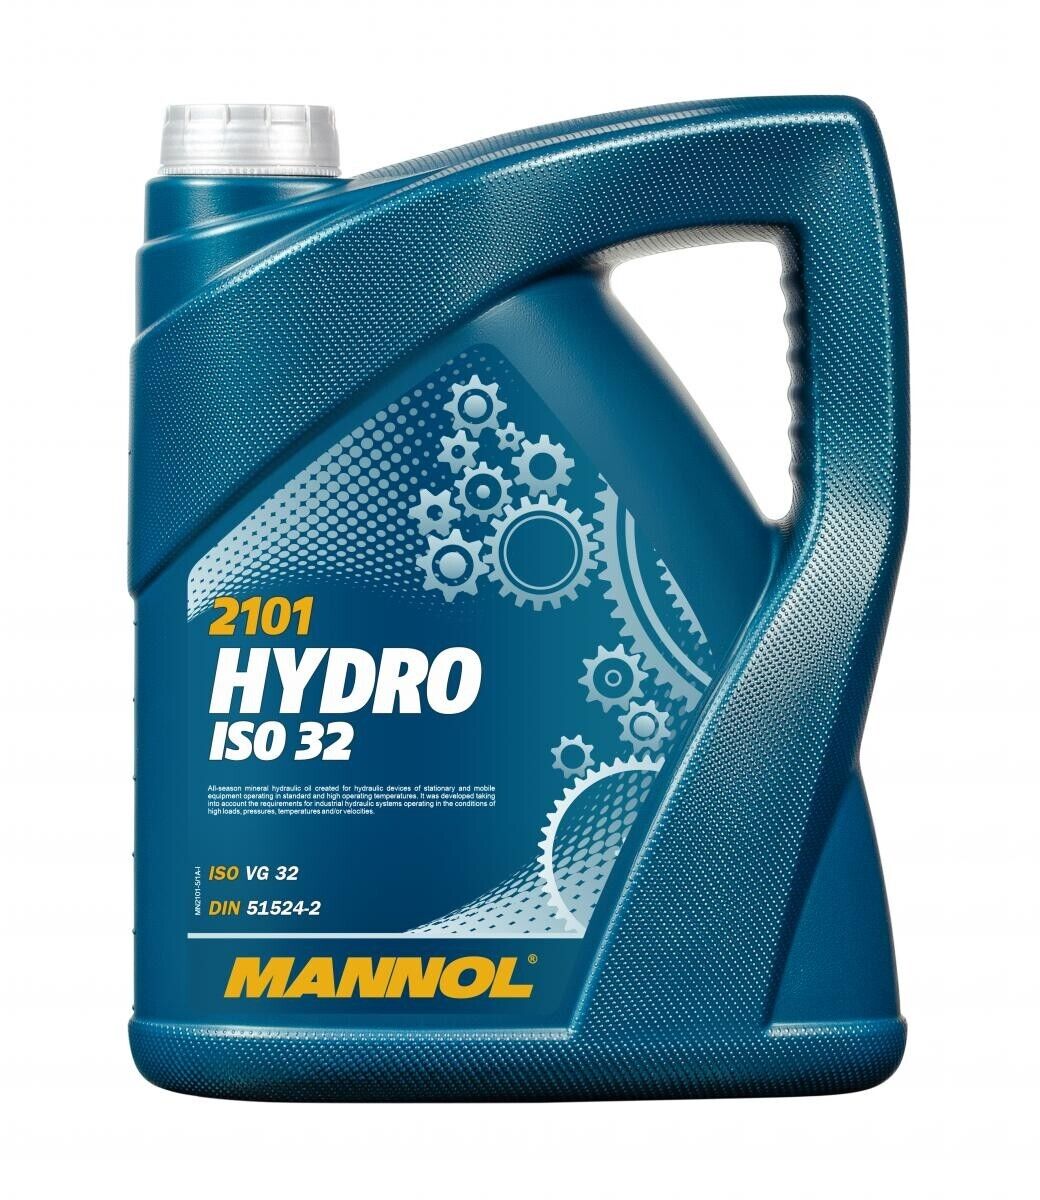 MANNOL MN2101-5 HYDRO ISO 32 Hydrauliköl 5L